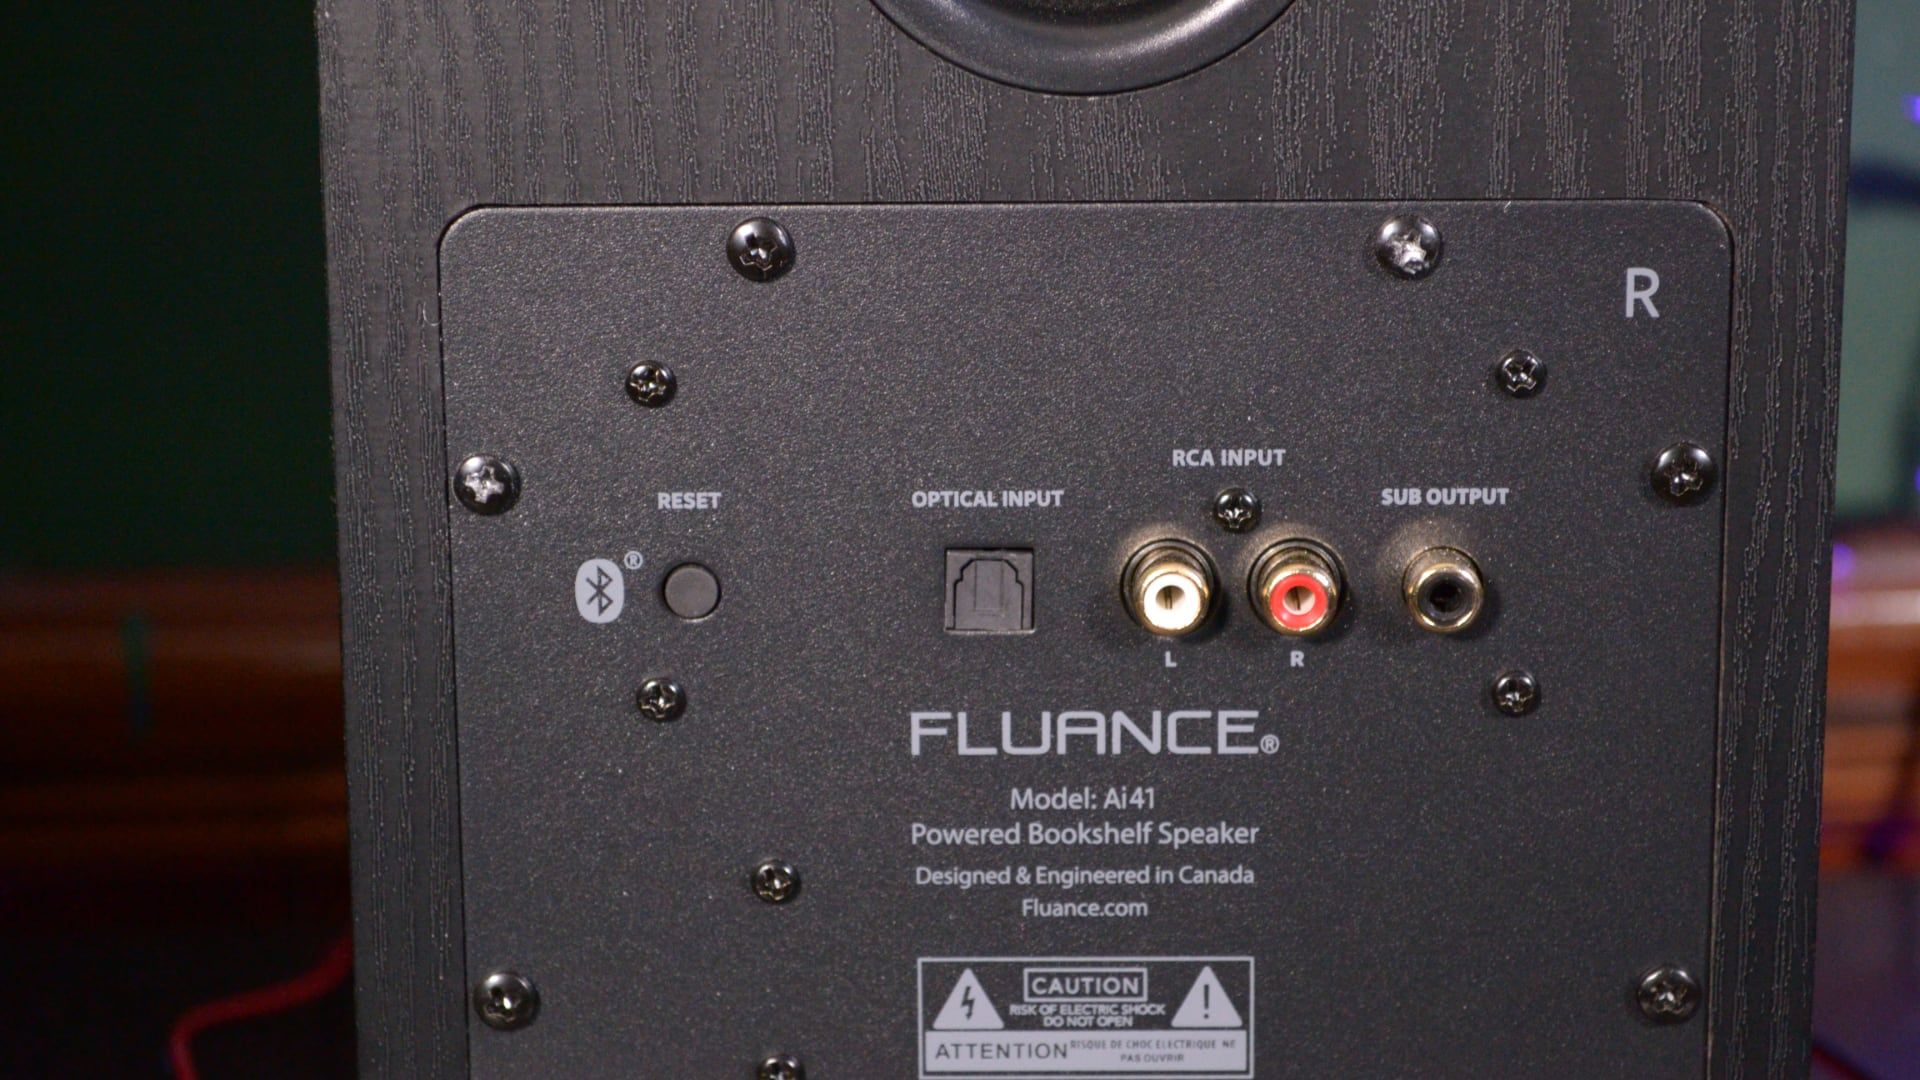 Fluance Ai41 ports for connectivity